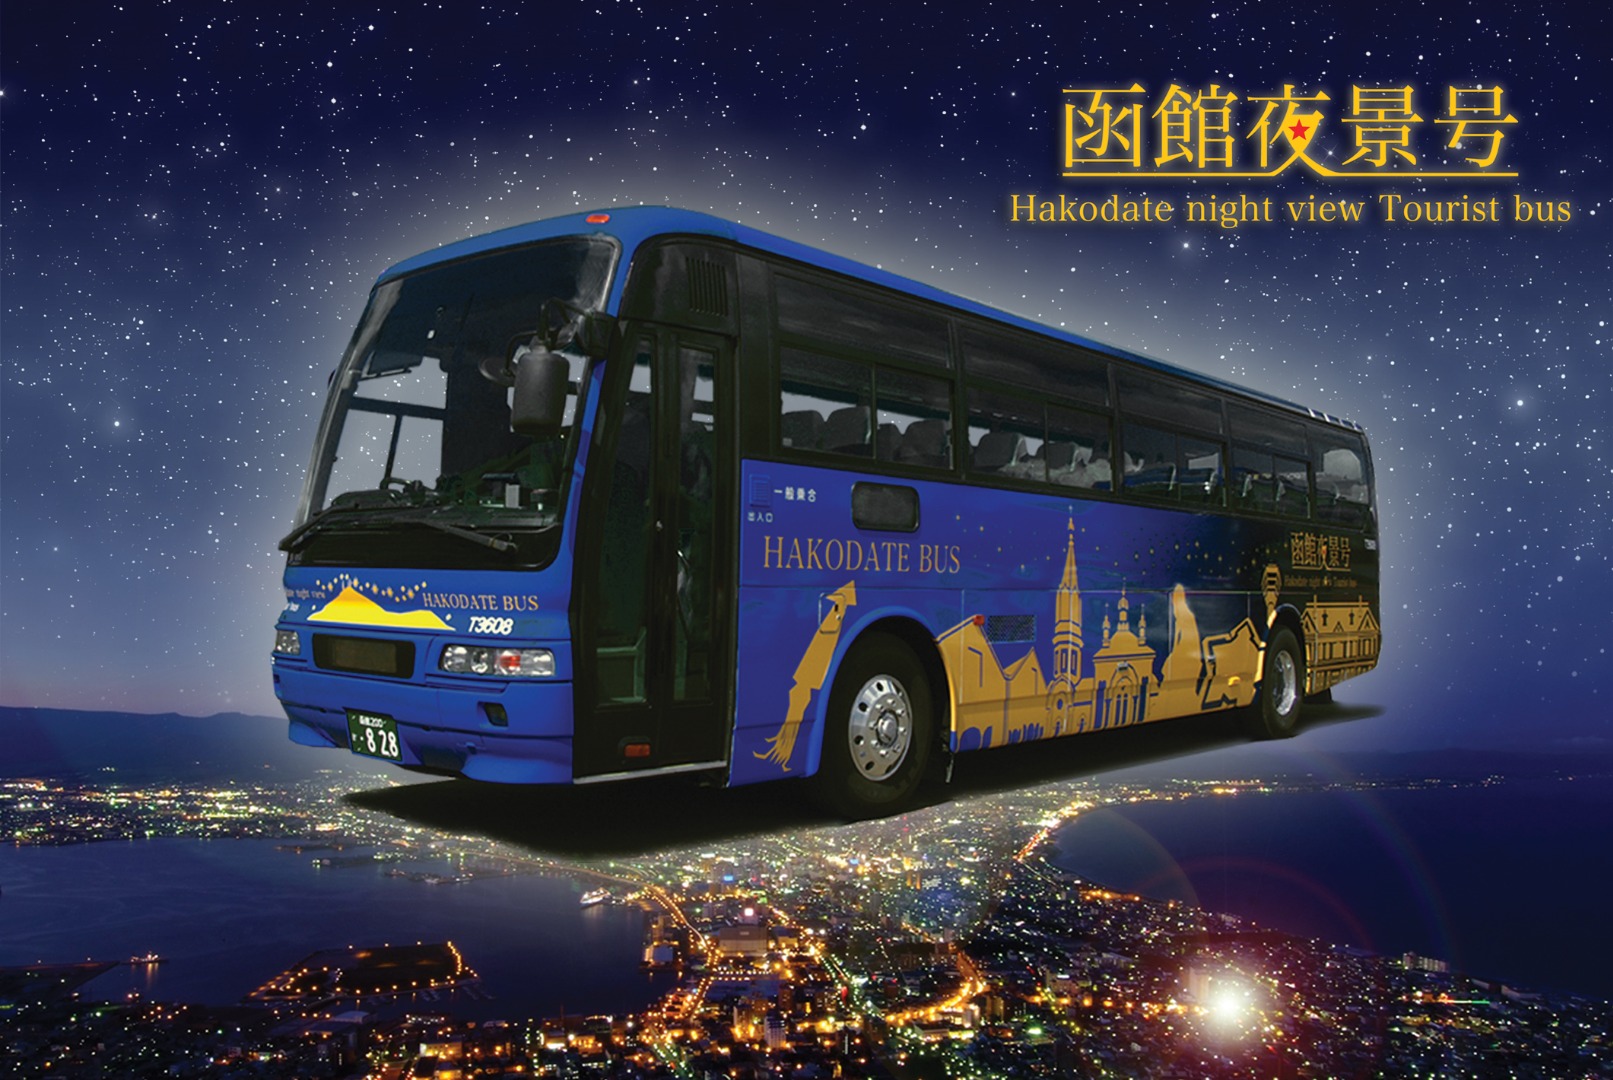 函館山夜景觀光巴士之旅